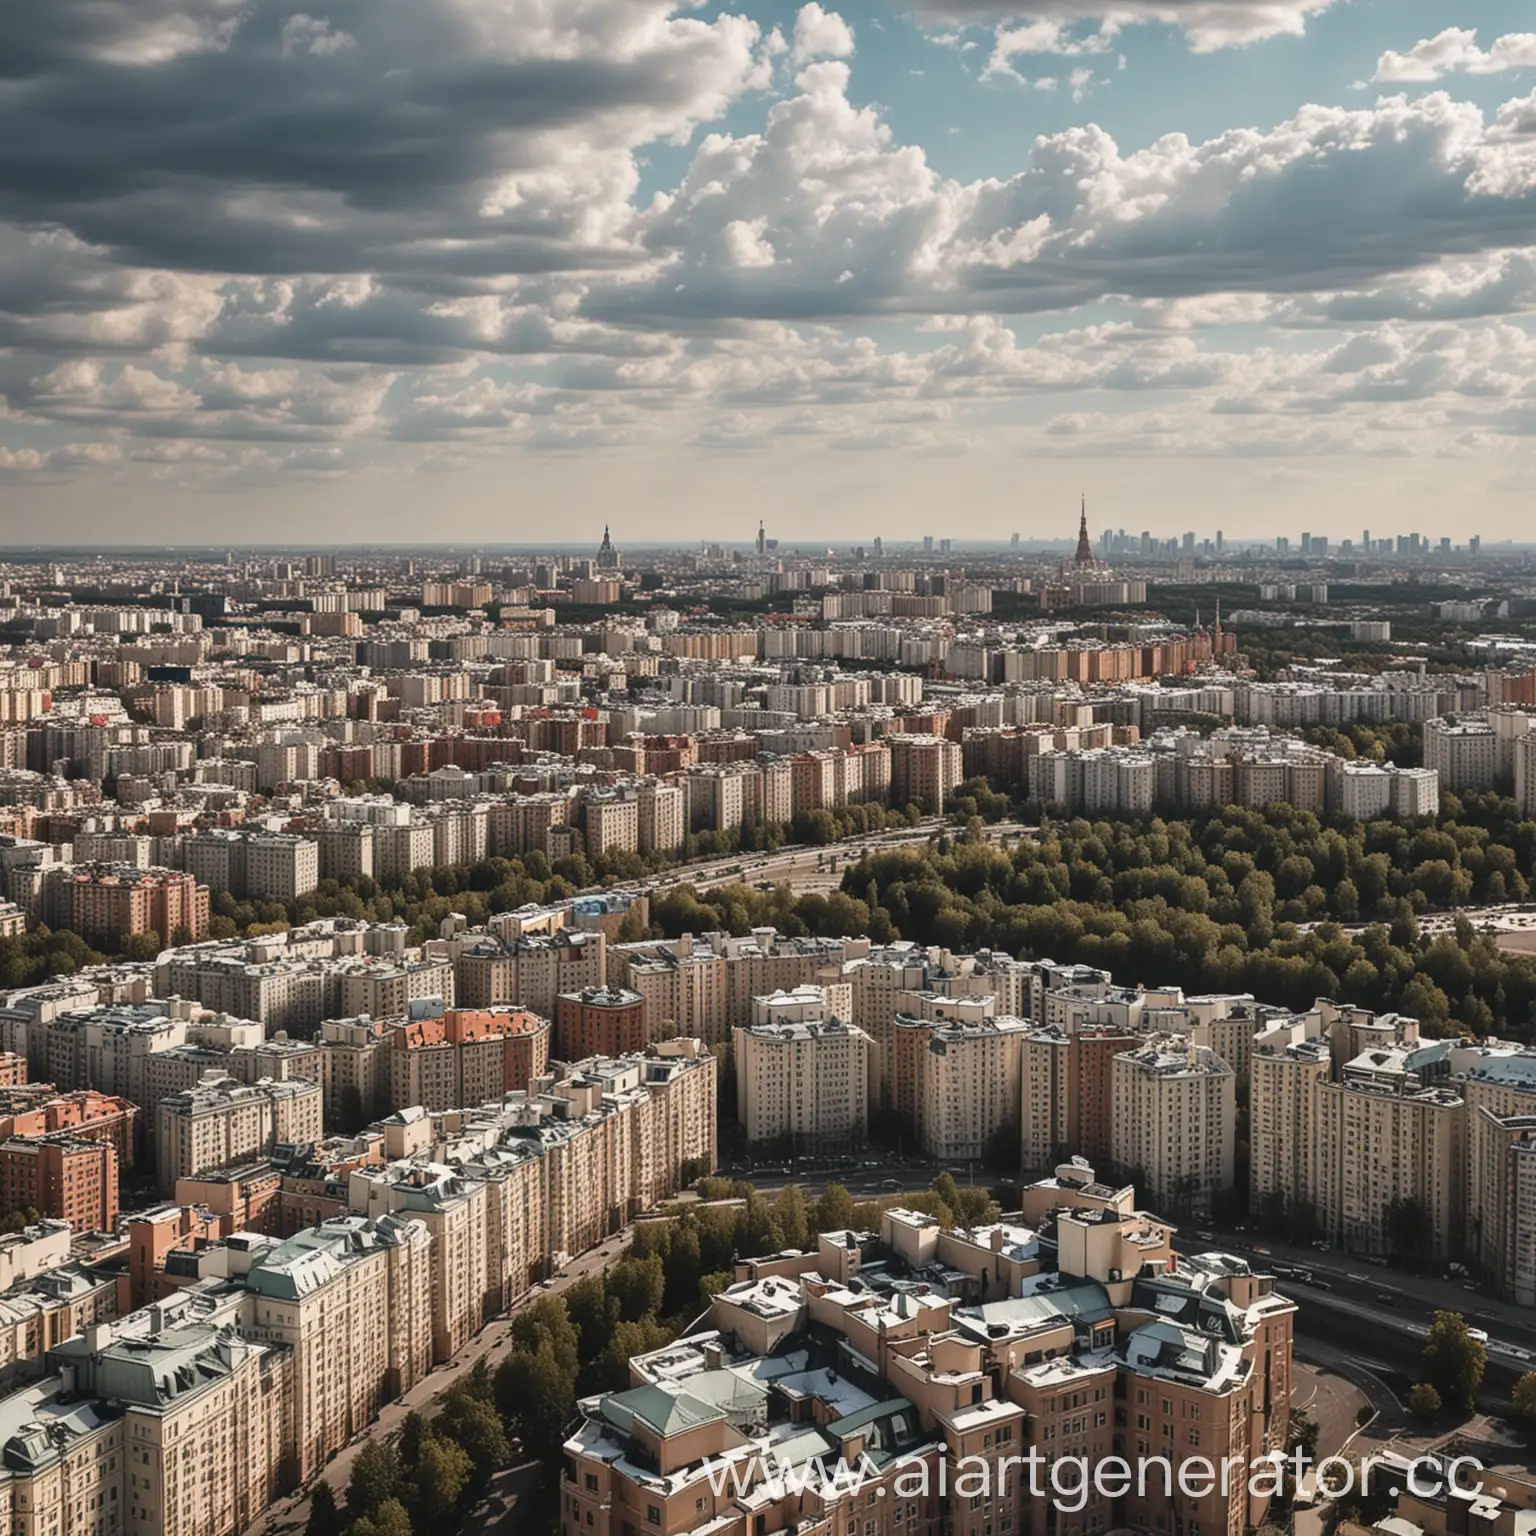 картинка города москва с высоты 20 этажа и вид на дома